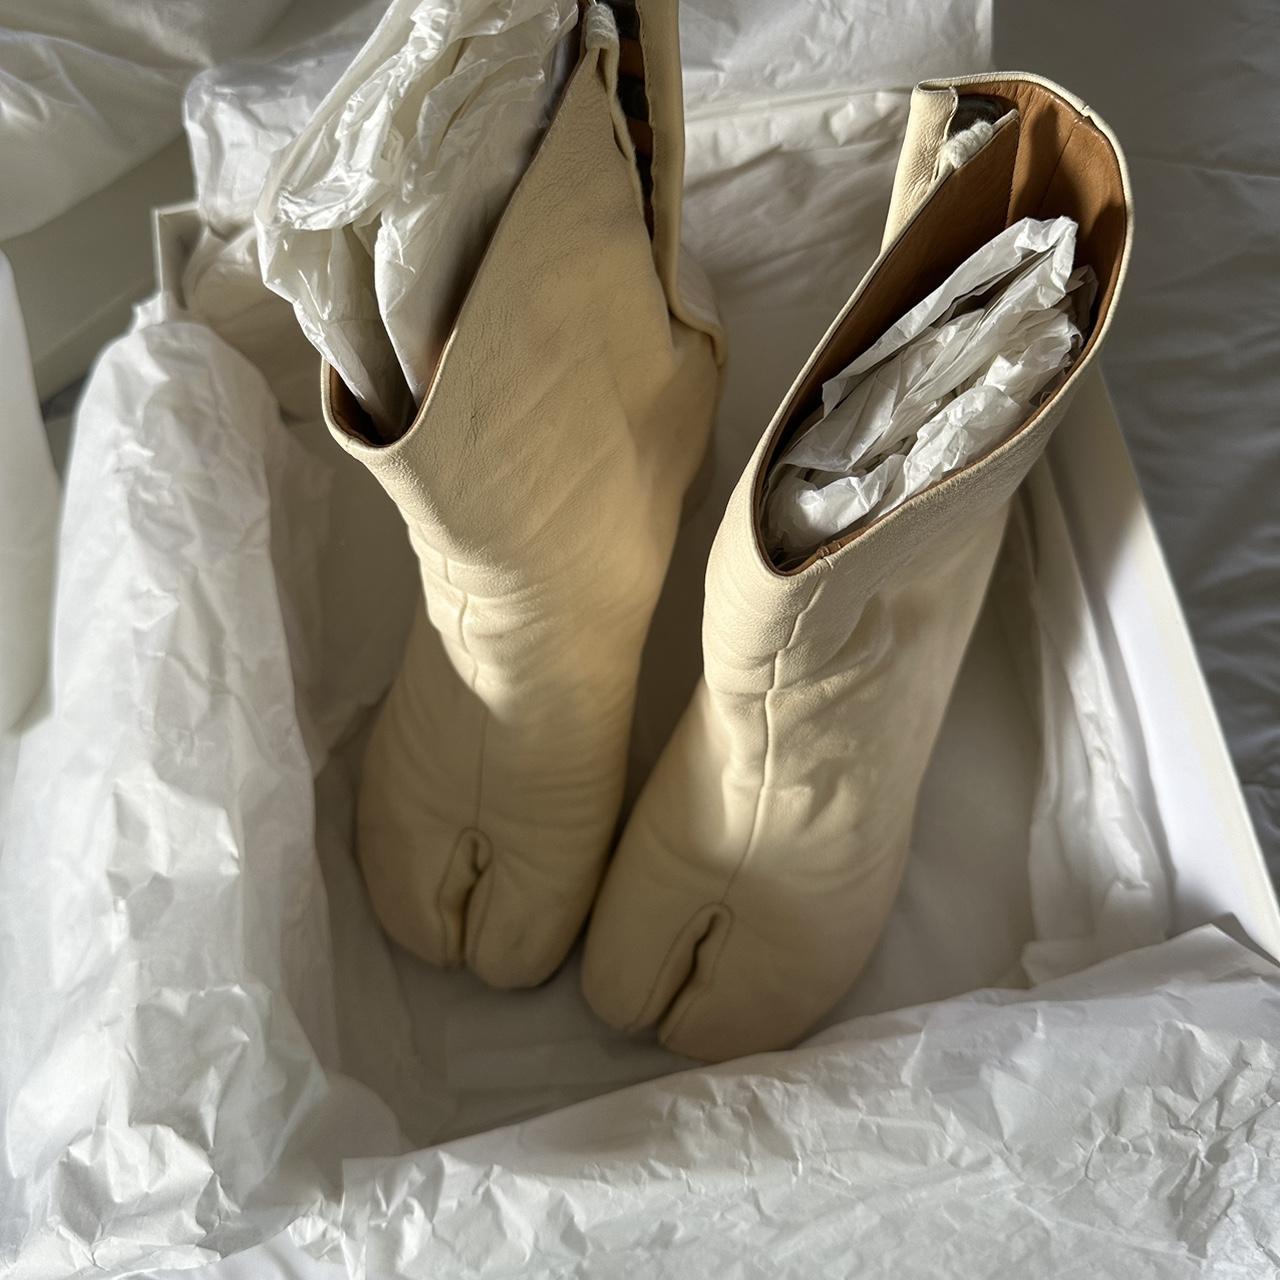 Maison Margiela Women's Cream Boots